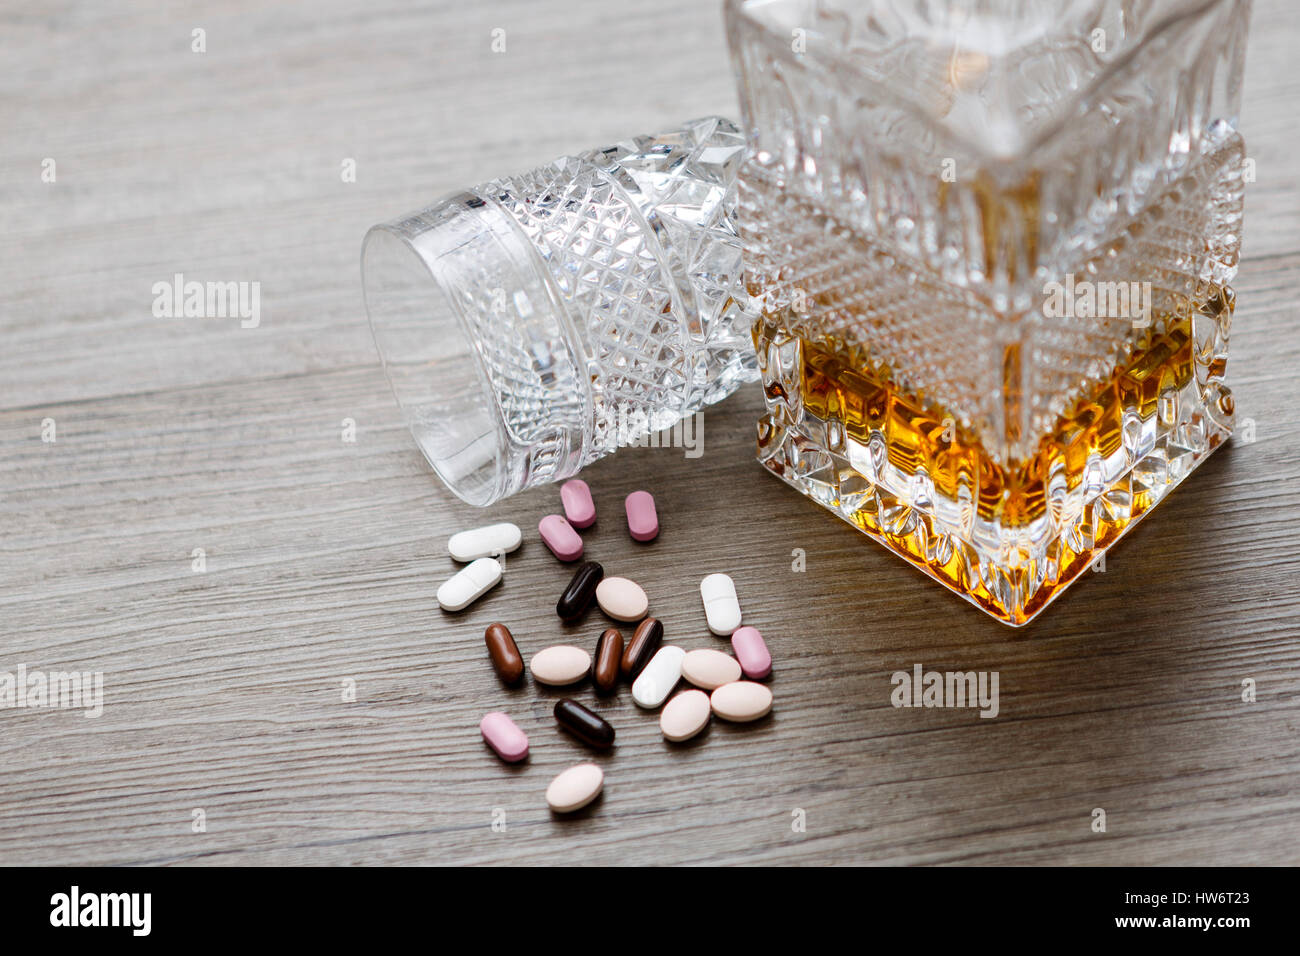 Flasche mit Alkohol und Tabletten, Whisky und Drogen, sucht Stockfotografie  - Alamy